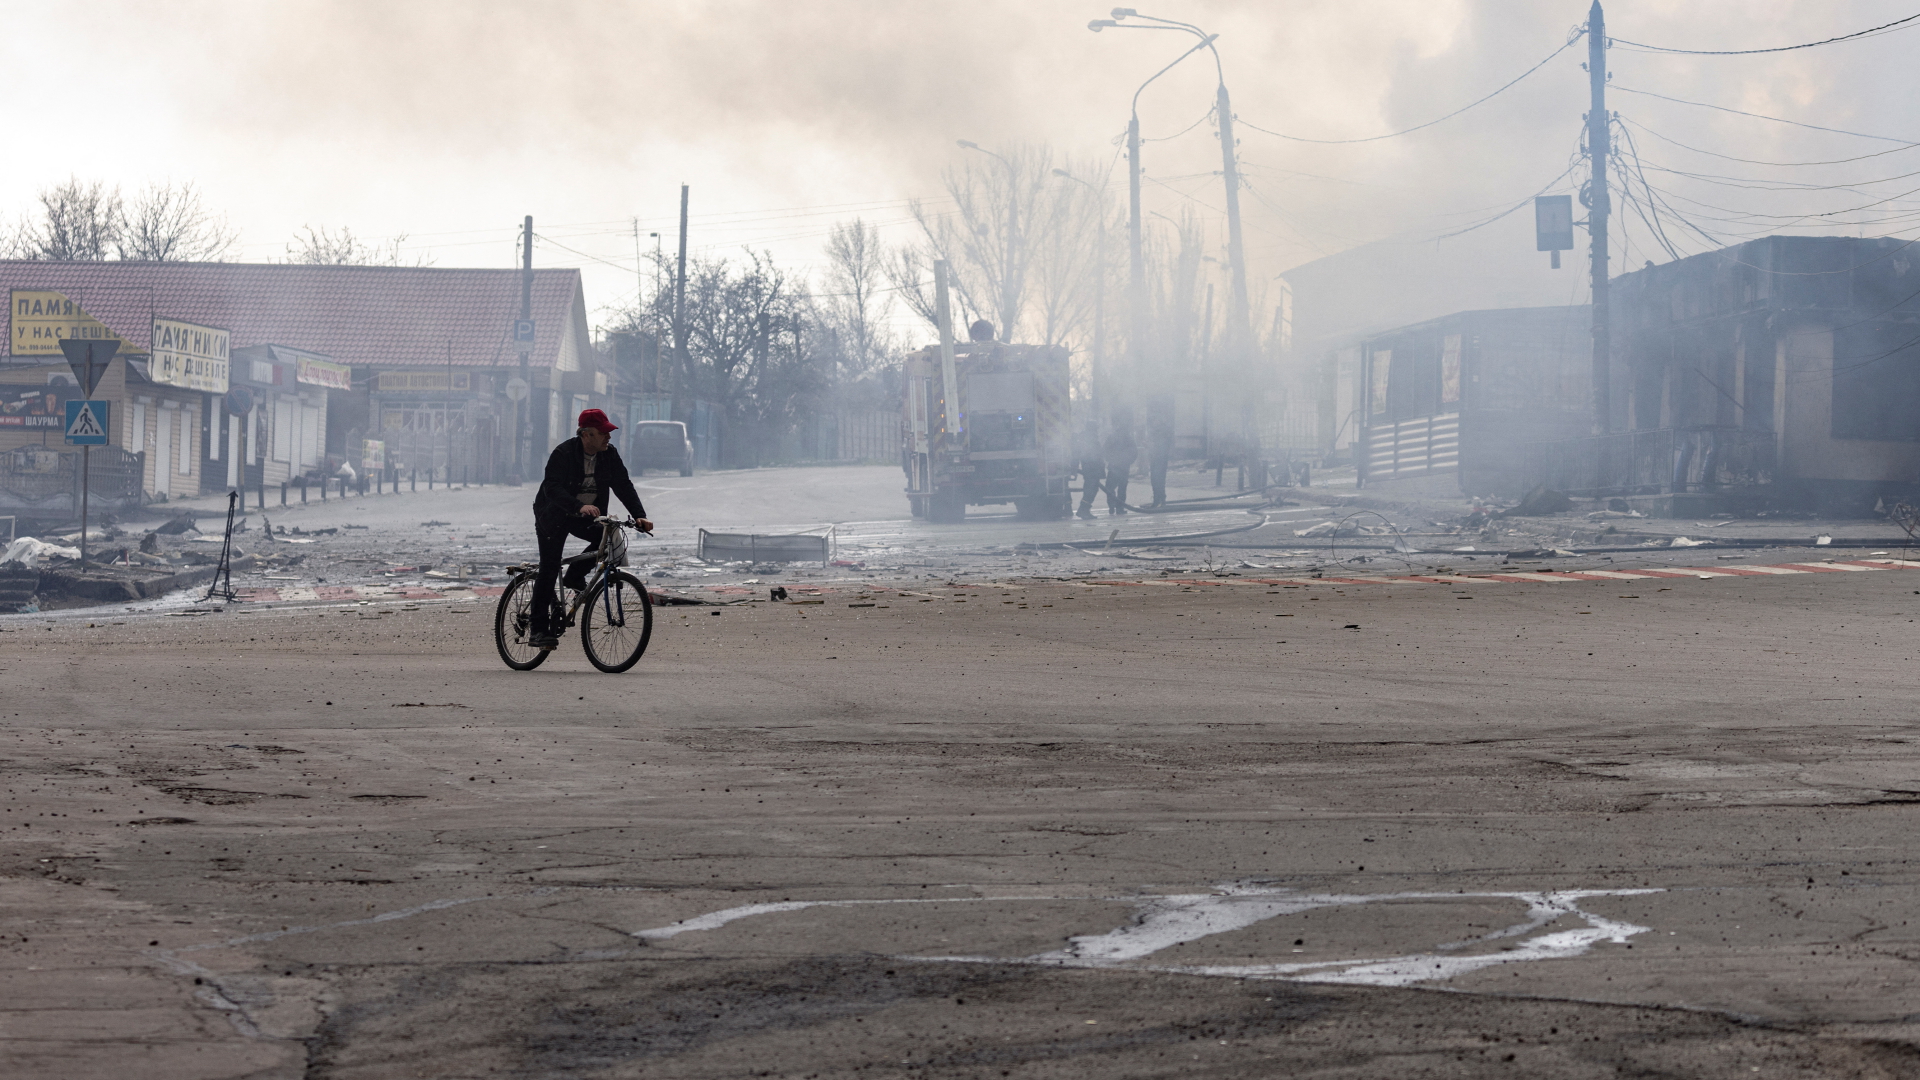 Guerra contro l’Ucraina: ++ Molti sono morti temuti dopo l’attacco alla scuola ++